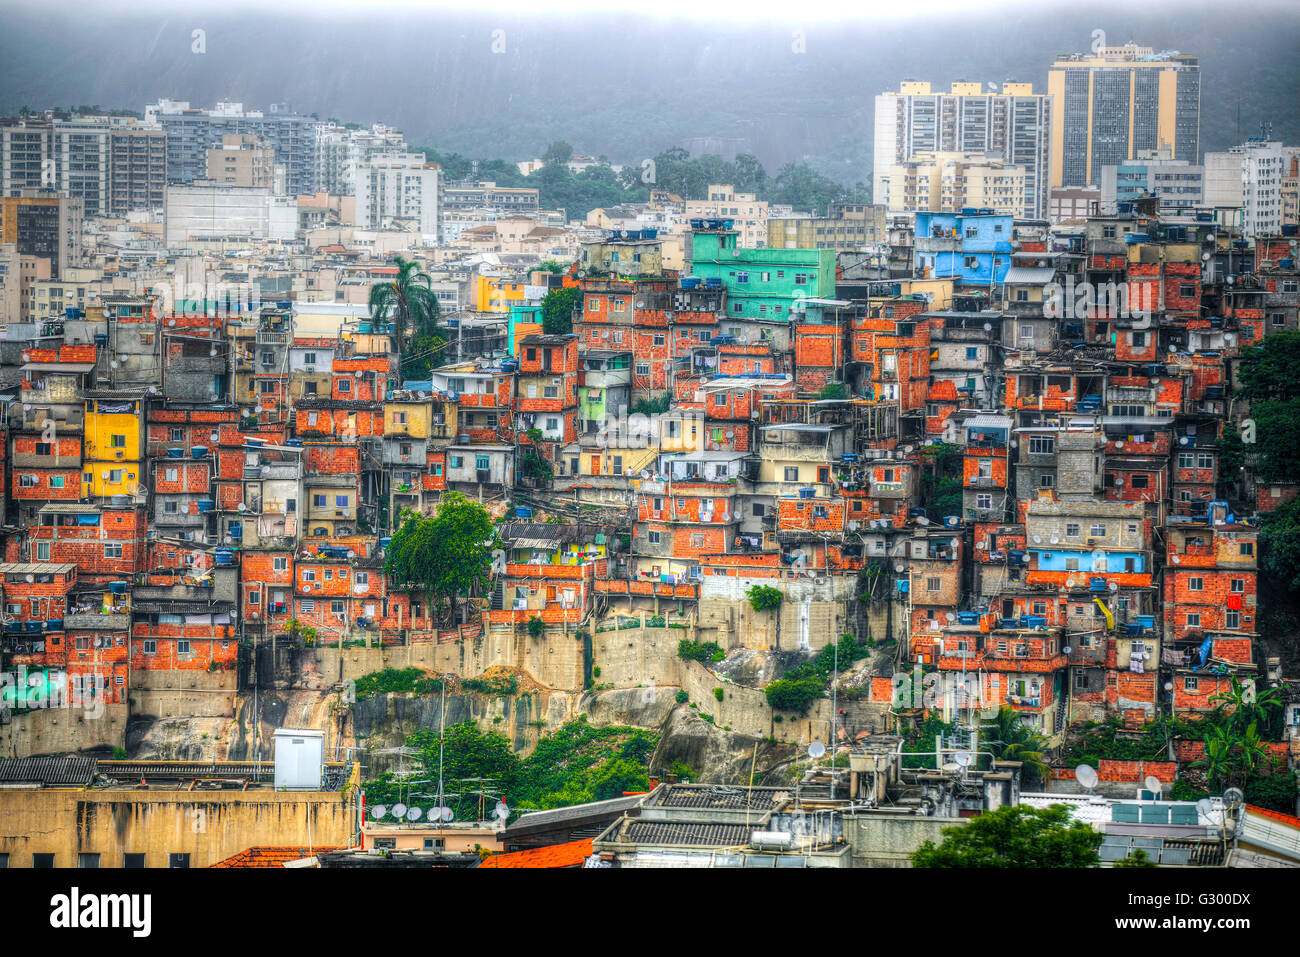 Des bâtiments colorés favela de Rio de Janeiro Brésil Banque D'Images